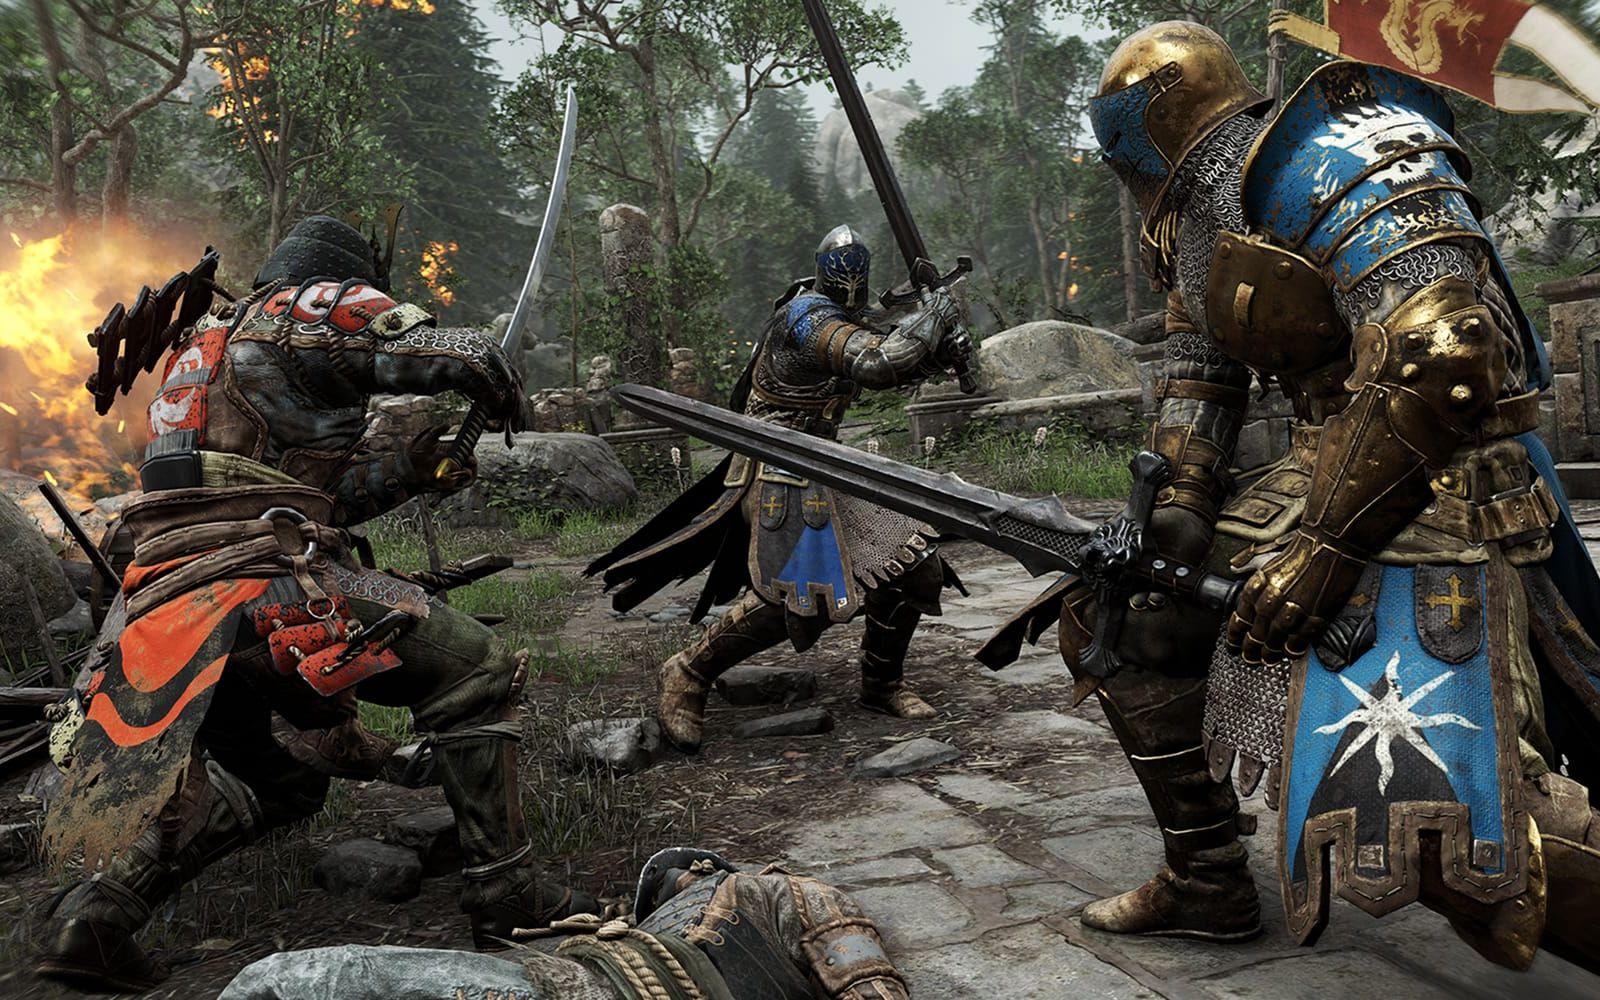 <strong>FOR HONOR.</strong> Är du en viking, samuraj eller riddare? I For Honor kan du själv välja vilken av de medeltida krigarna du vill vara och mäta dig mot andra krigare från samma era. Släpps 14 februari. (PS4, Xbox One, PC)